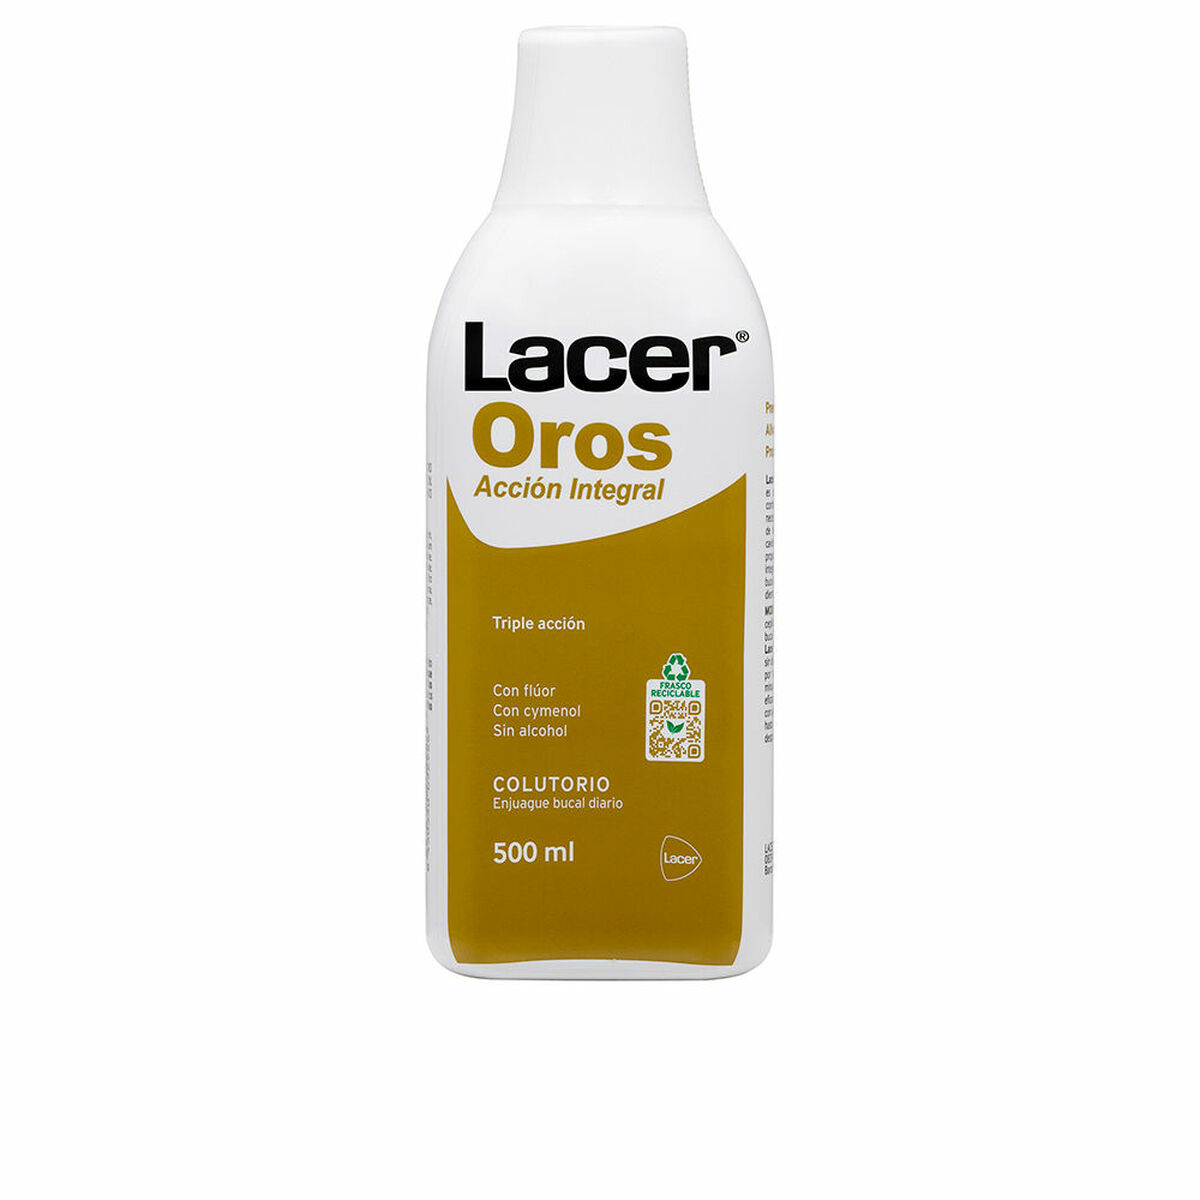 Mundwasser Lacer Oros (500 ml)